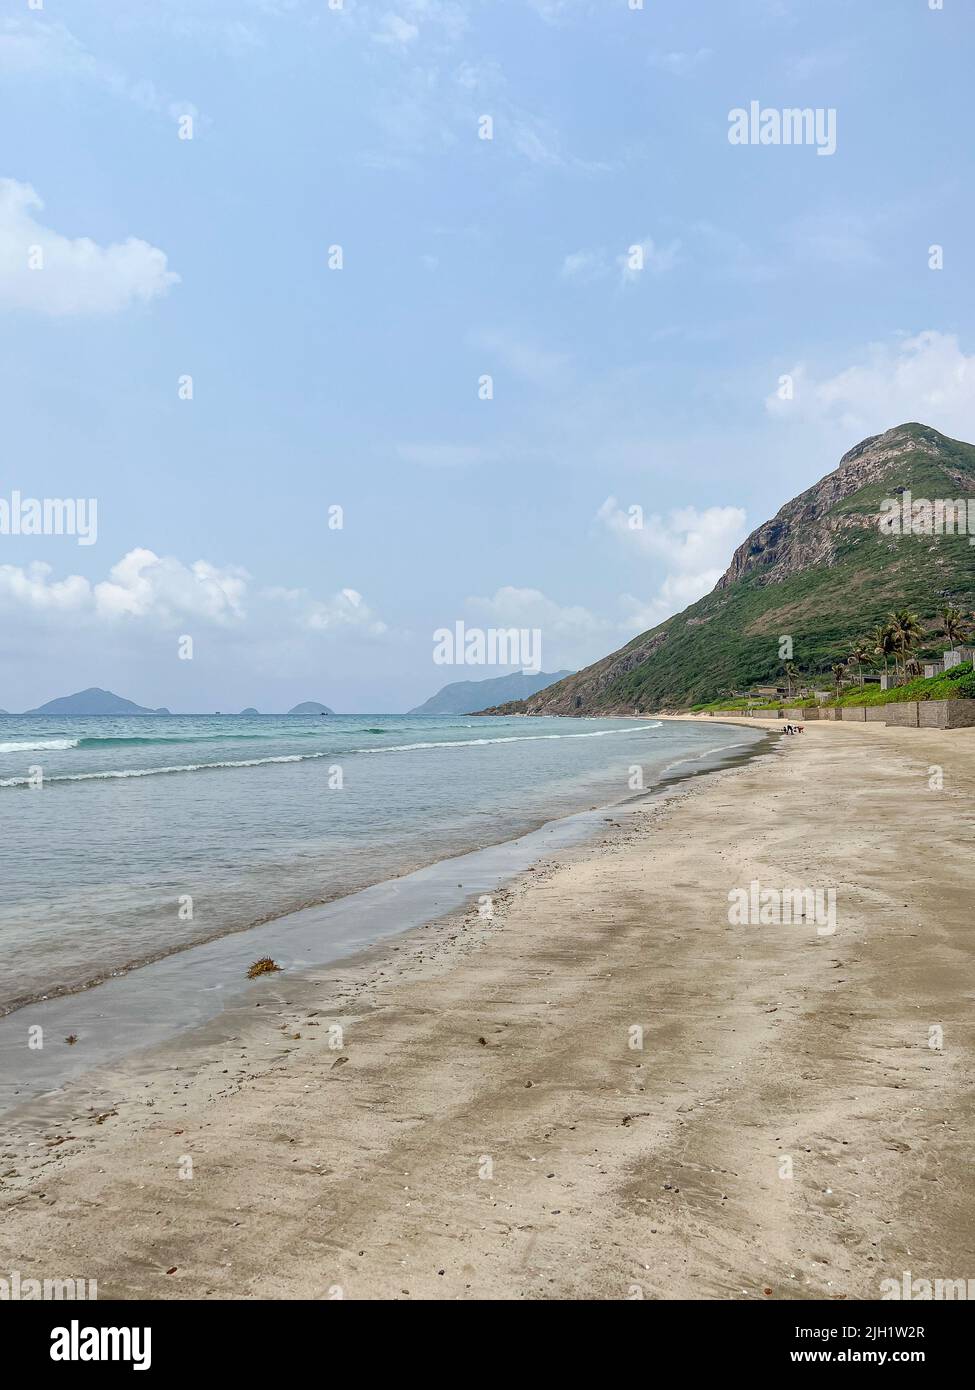 Con Dao Insel mit einer entspannten Atmosphäre und schönen Strand, wo geeignet für Reisen und genießen Urlaubsreise. Stockfoto